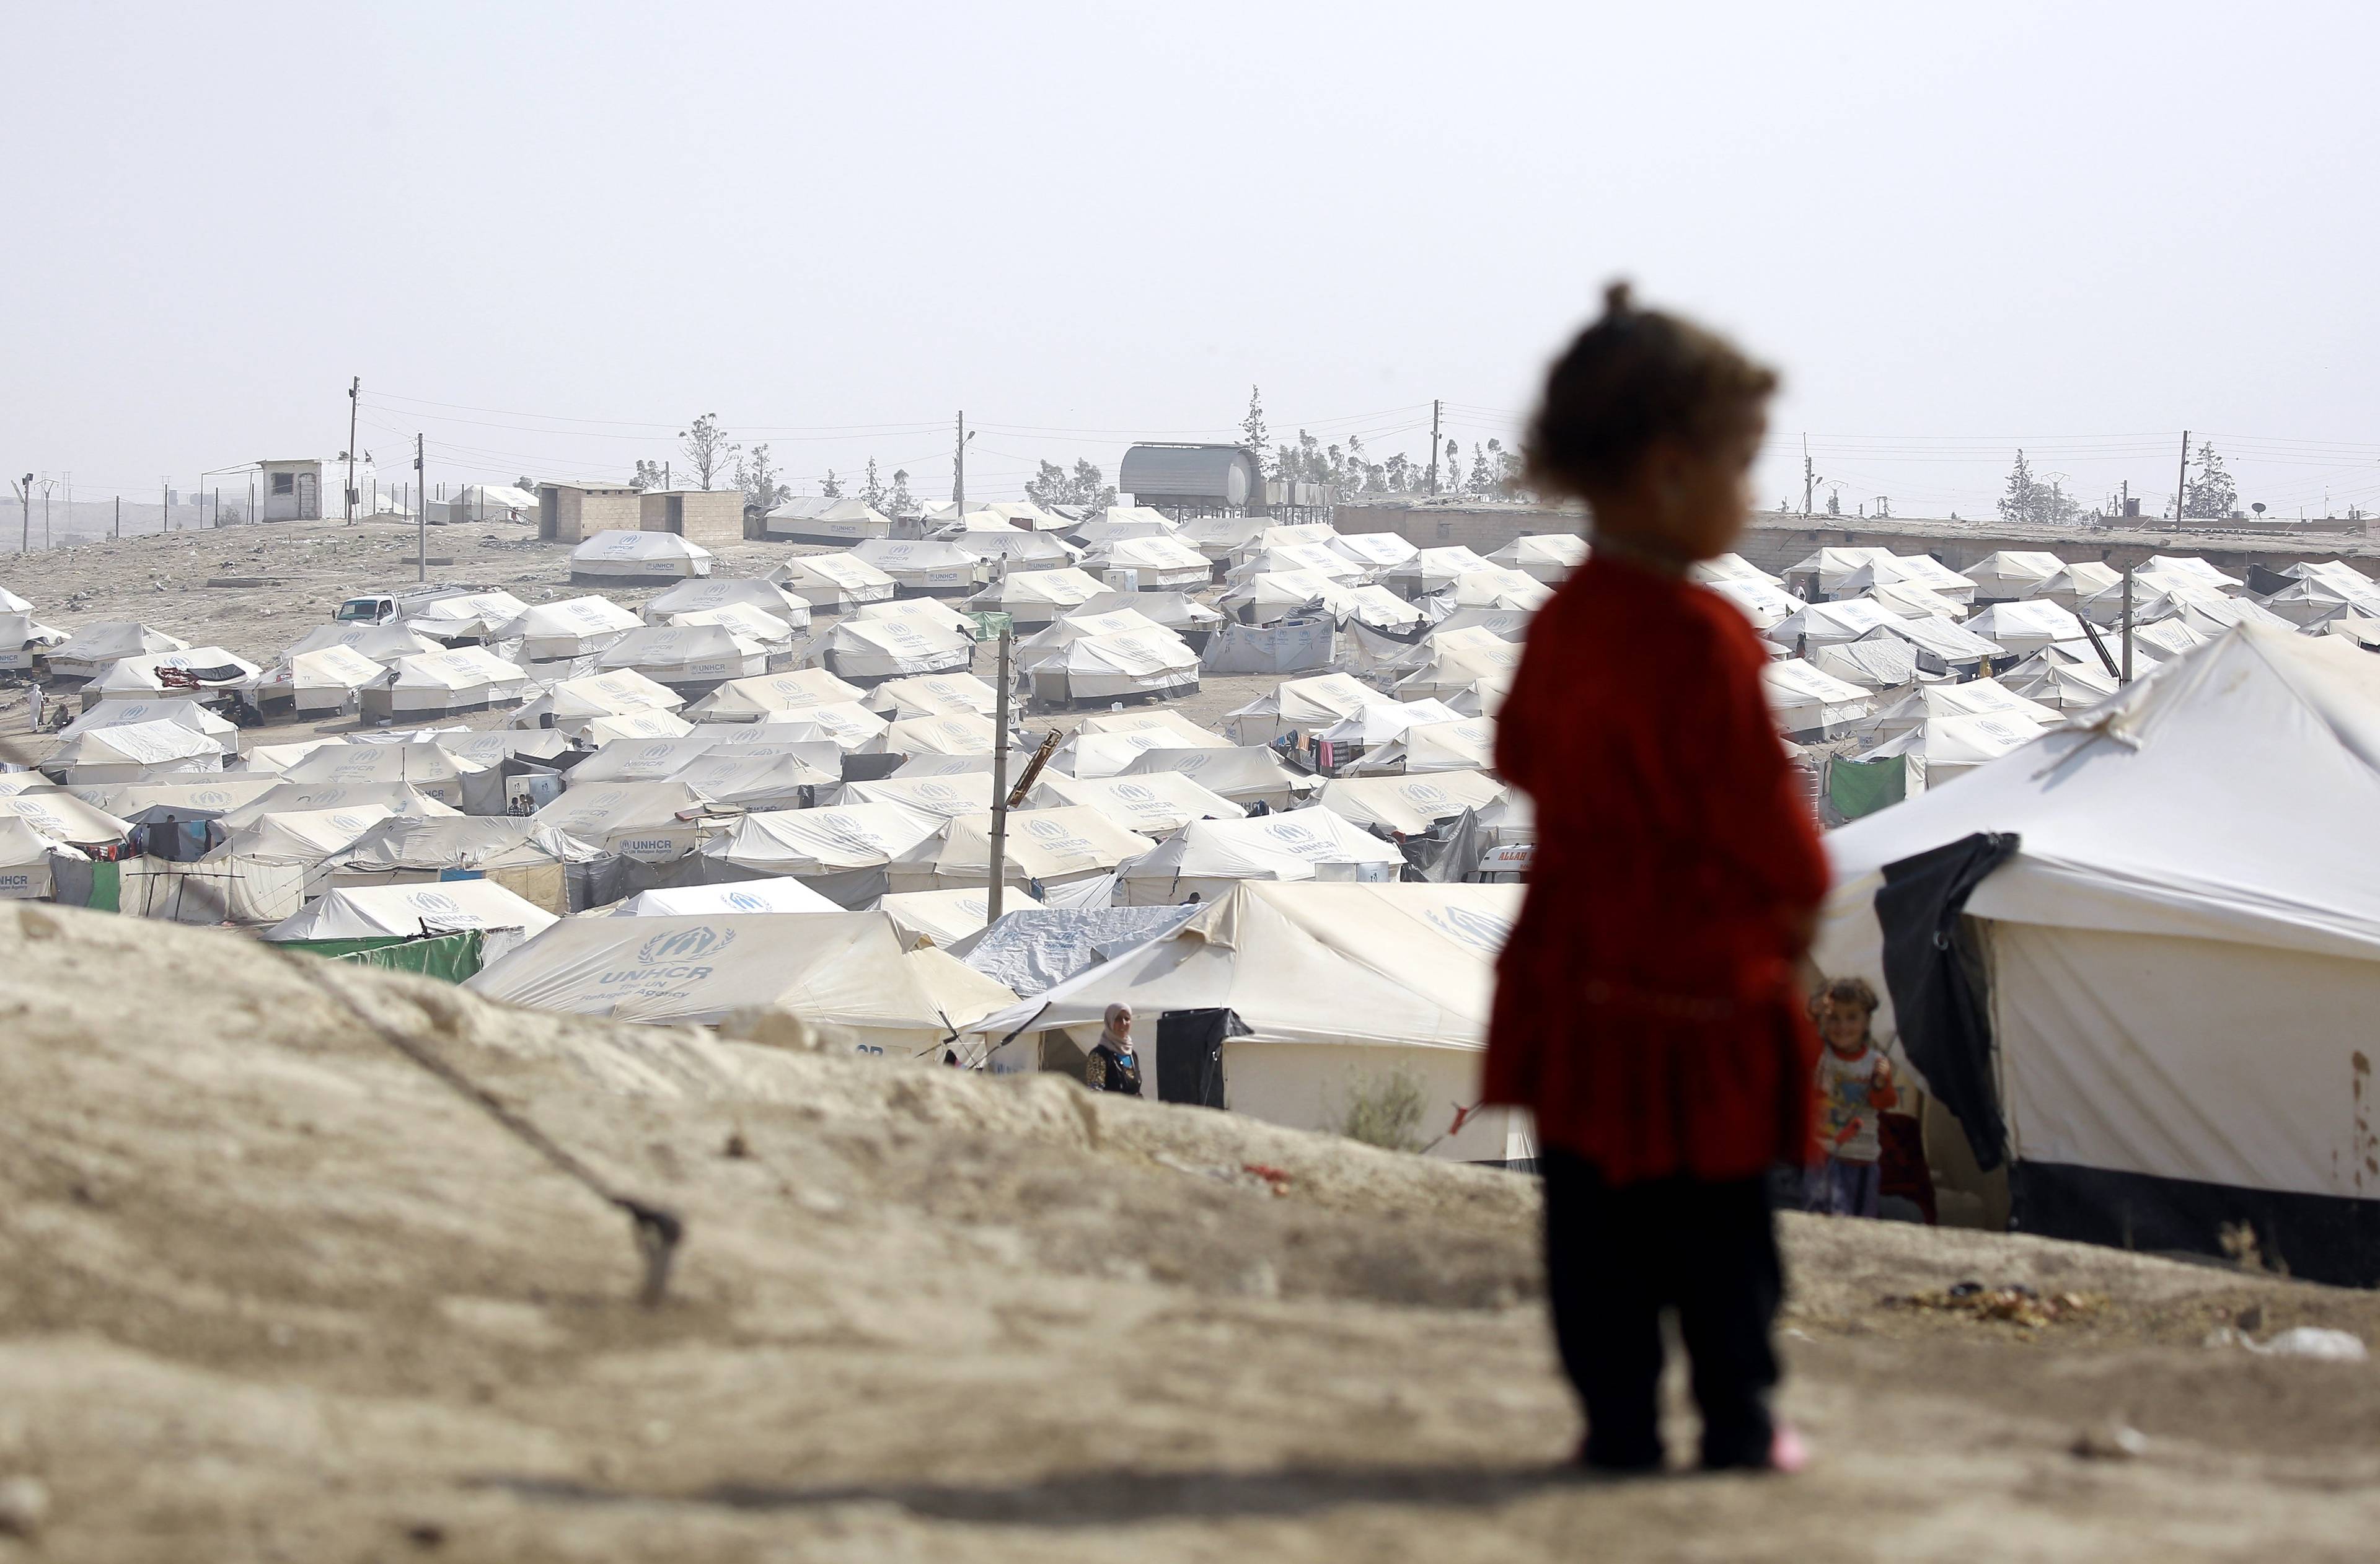 sylwetka dziecka na tle obozu z namiotami dla uchodźców